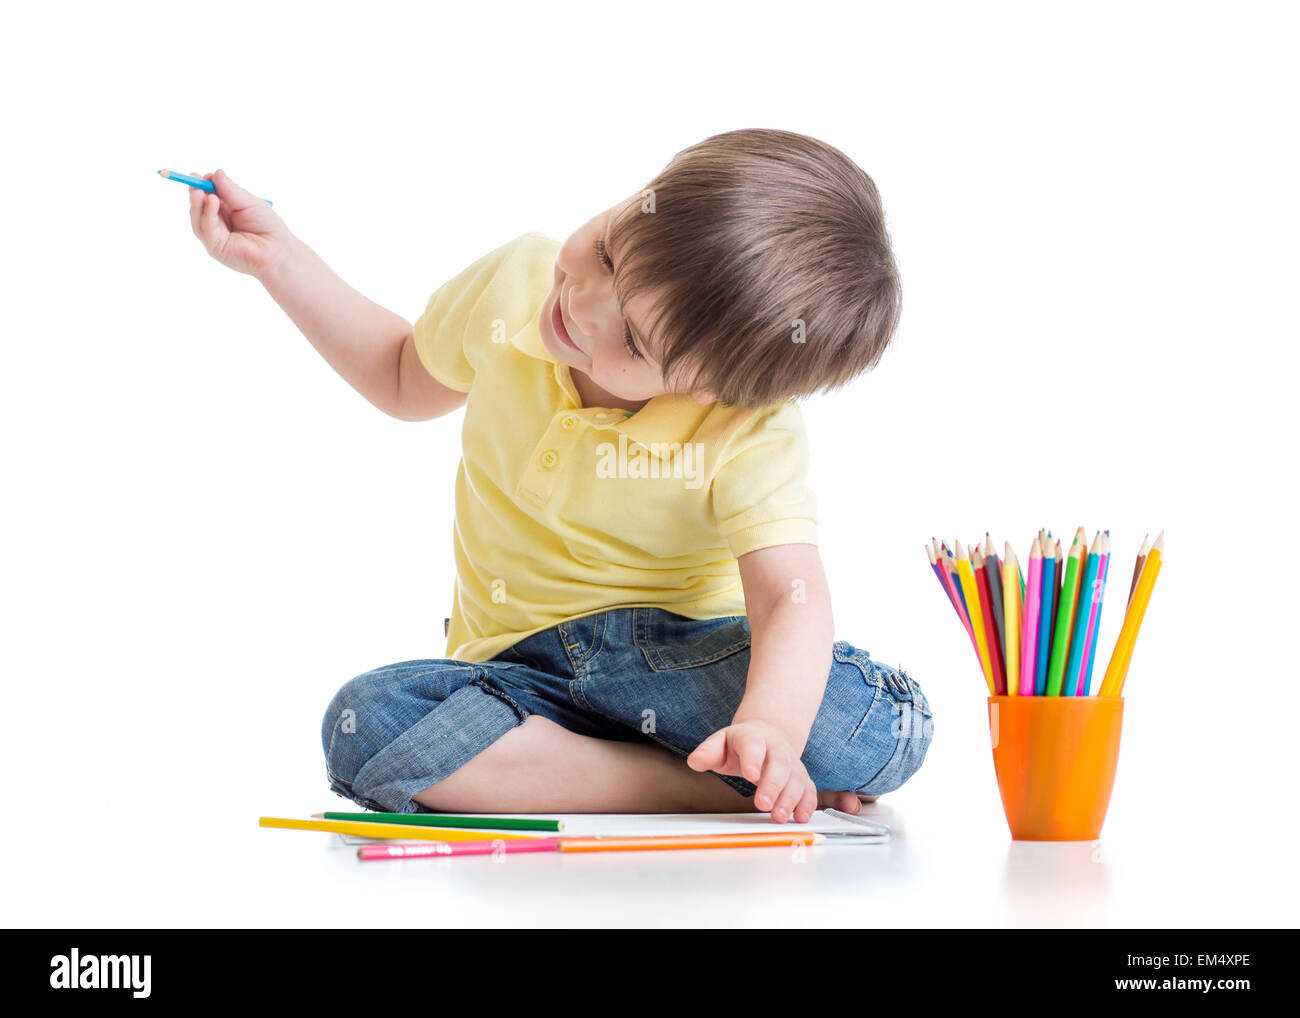 Glückliches Kind zeichnen mit Bleistiften in album Stockfoto